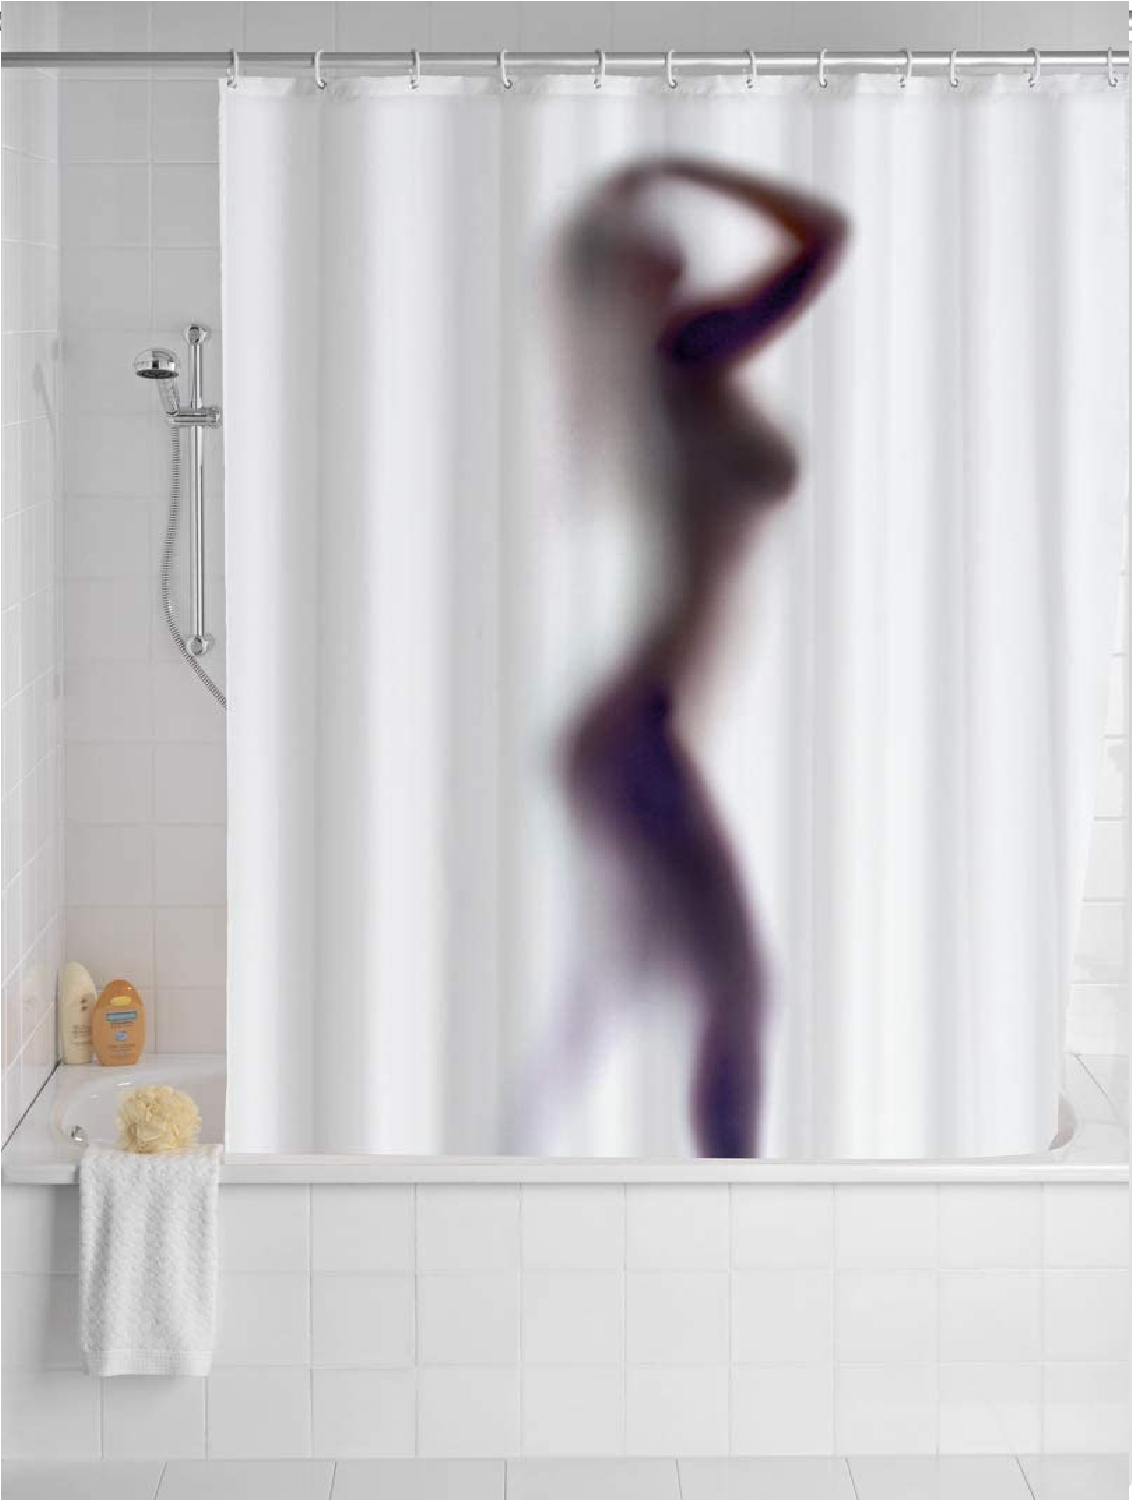 Anti-Schimmel Duschvorhang Silhouette, Textil-Vorhang mit Antischimmel Effekt fürs Badezimmer, waschbar, wasserabweisend, mit Ringen zur Befestigung an der Duschstange, 180x200 cm